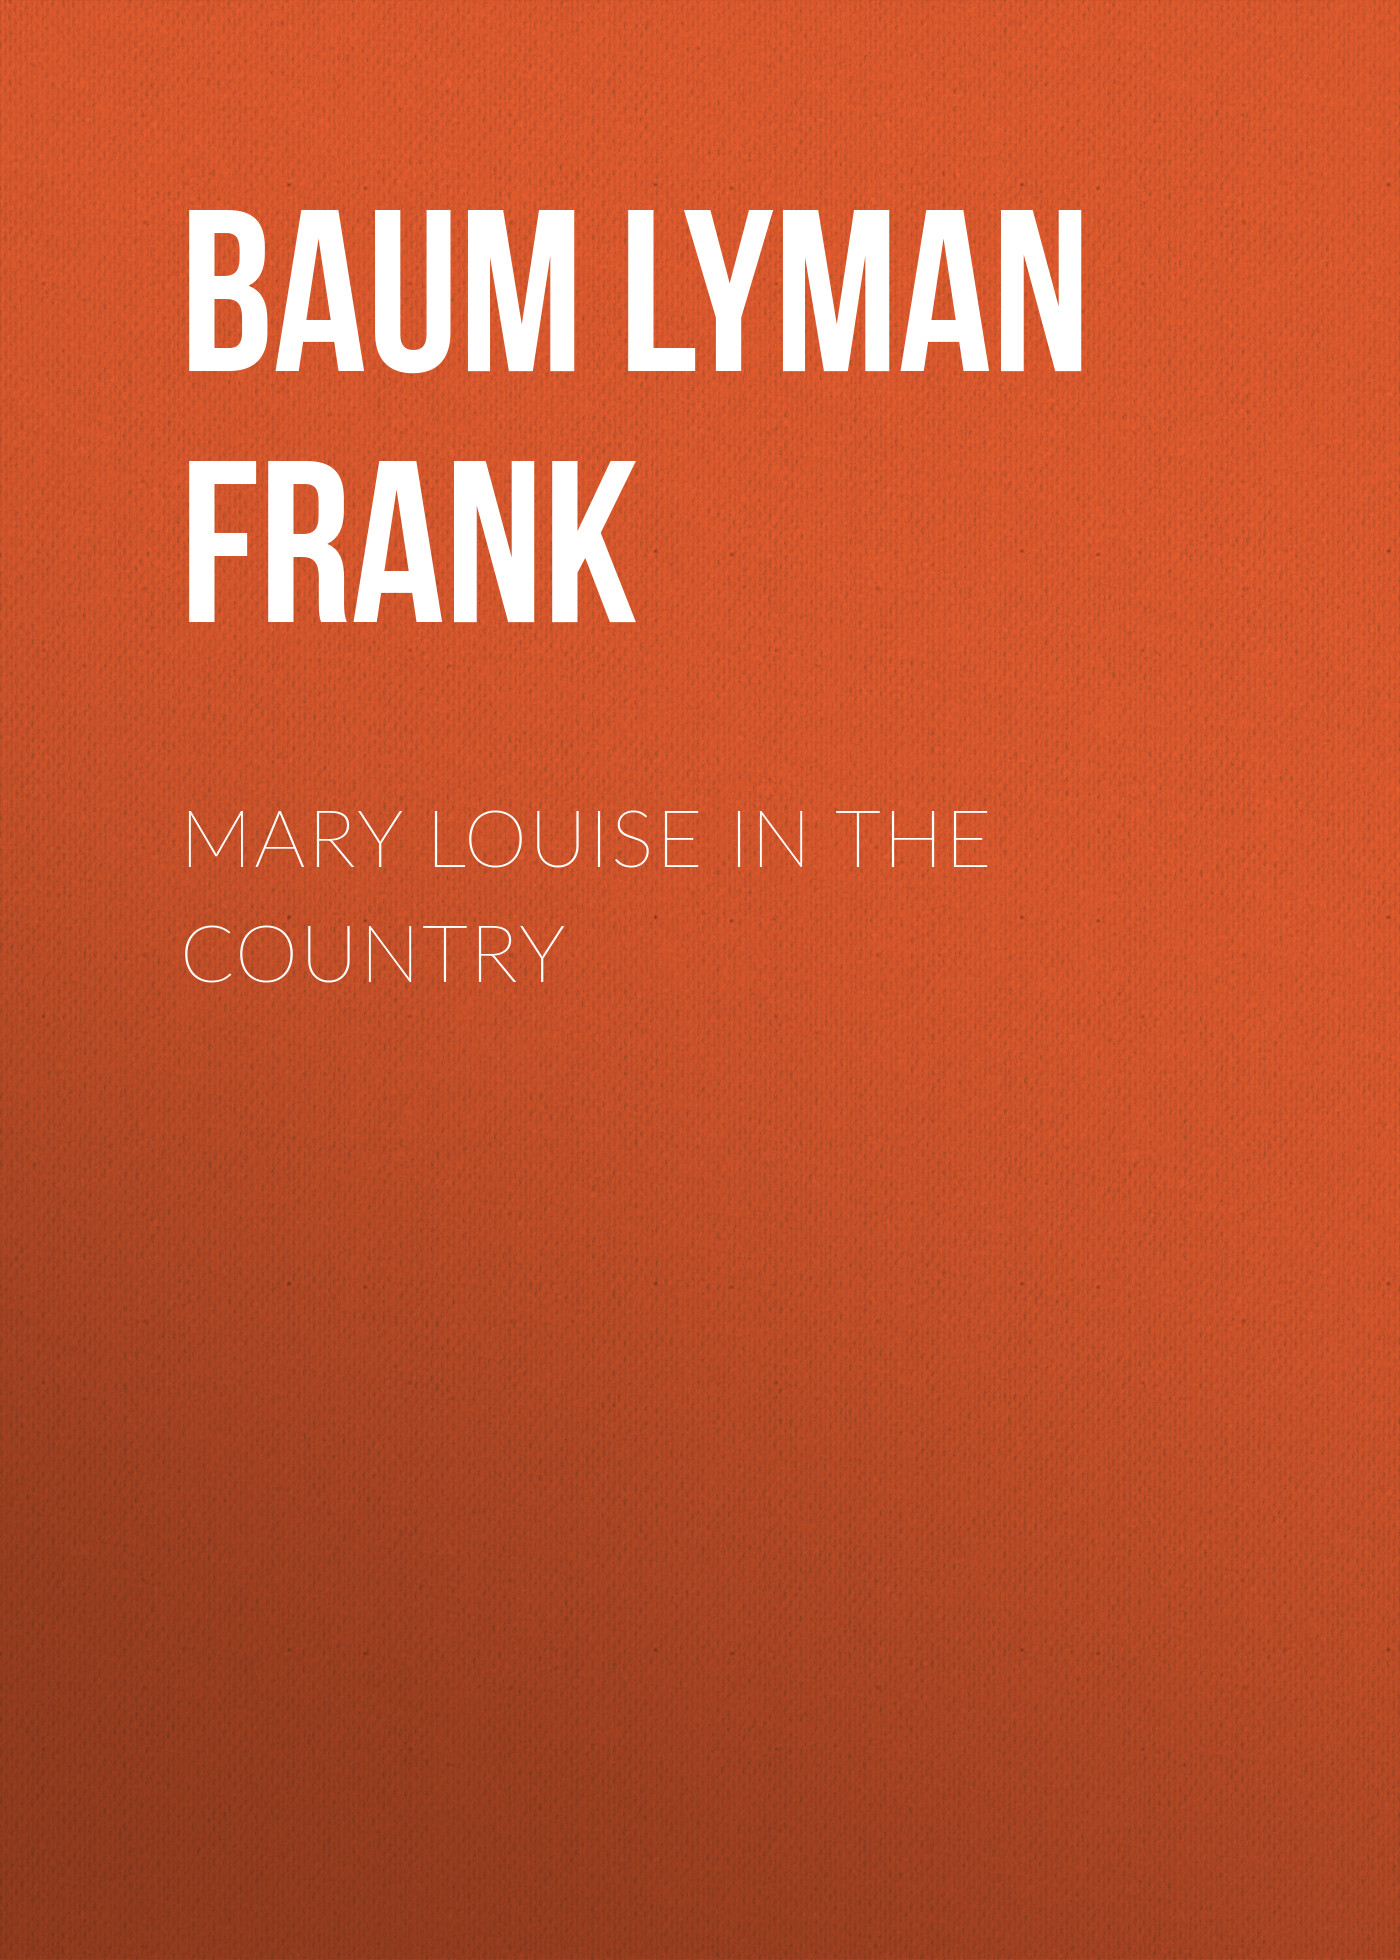 Книга Mary Louise in the Country из серии , созданная Lyman Baum, может относится к жанру Зарубежная старинная литература, Зарубежная классика. Стоимость электронной книги Mary Louise in the Country с идентификатором 25019323 составляет 0 руб.